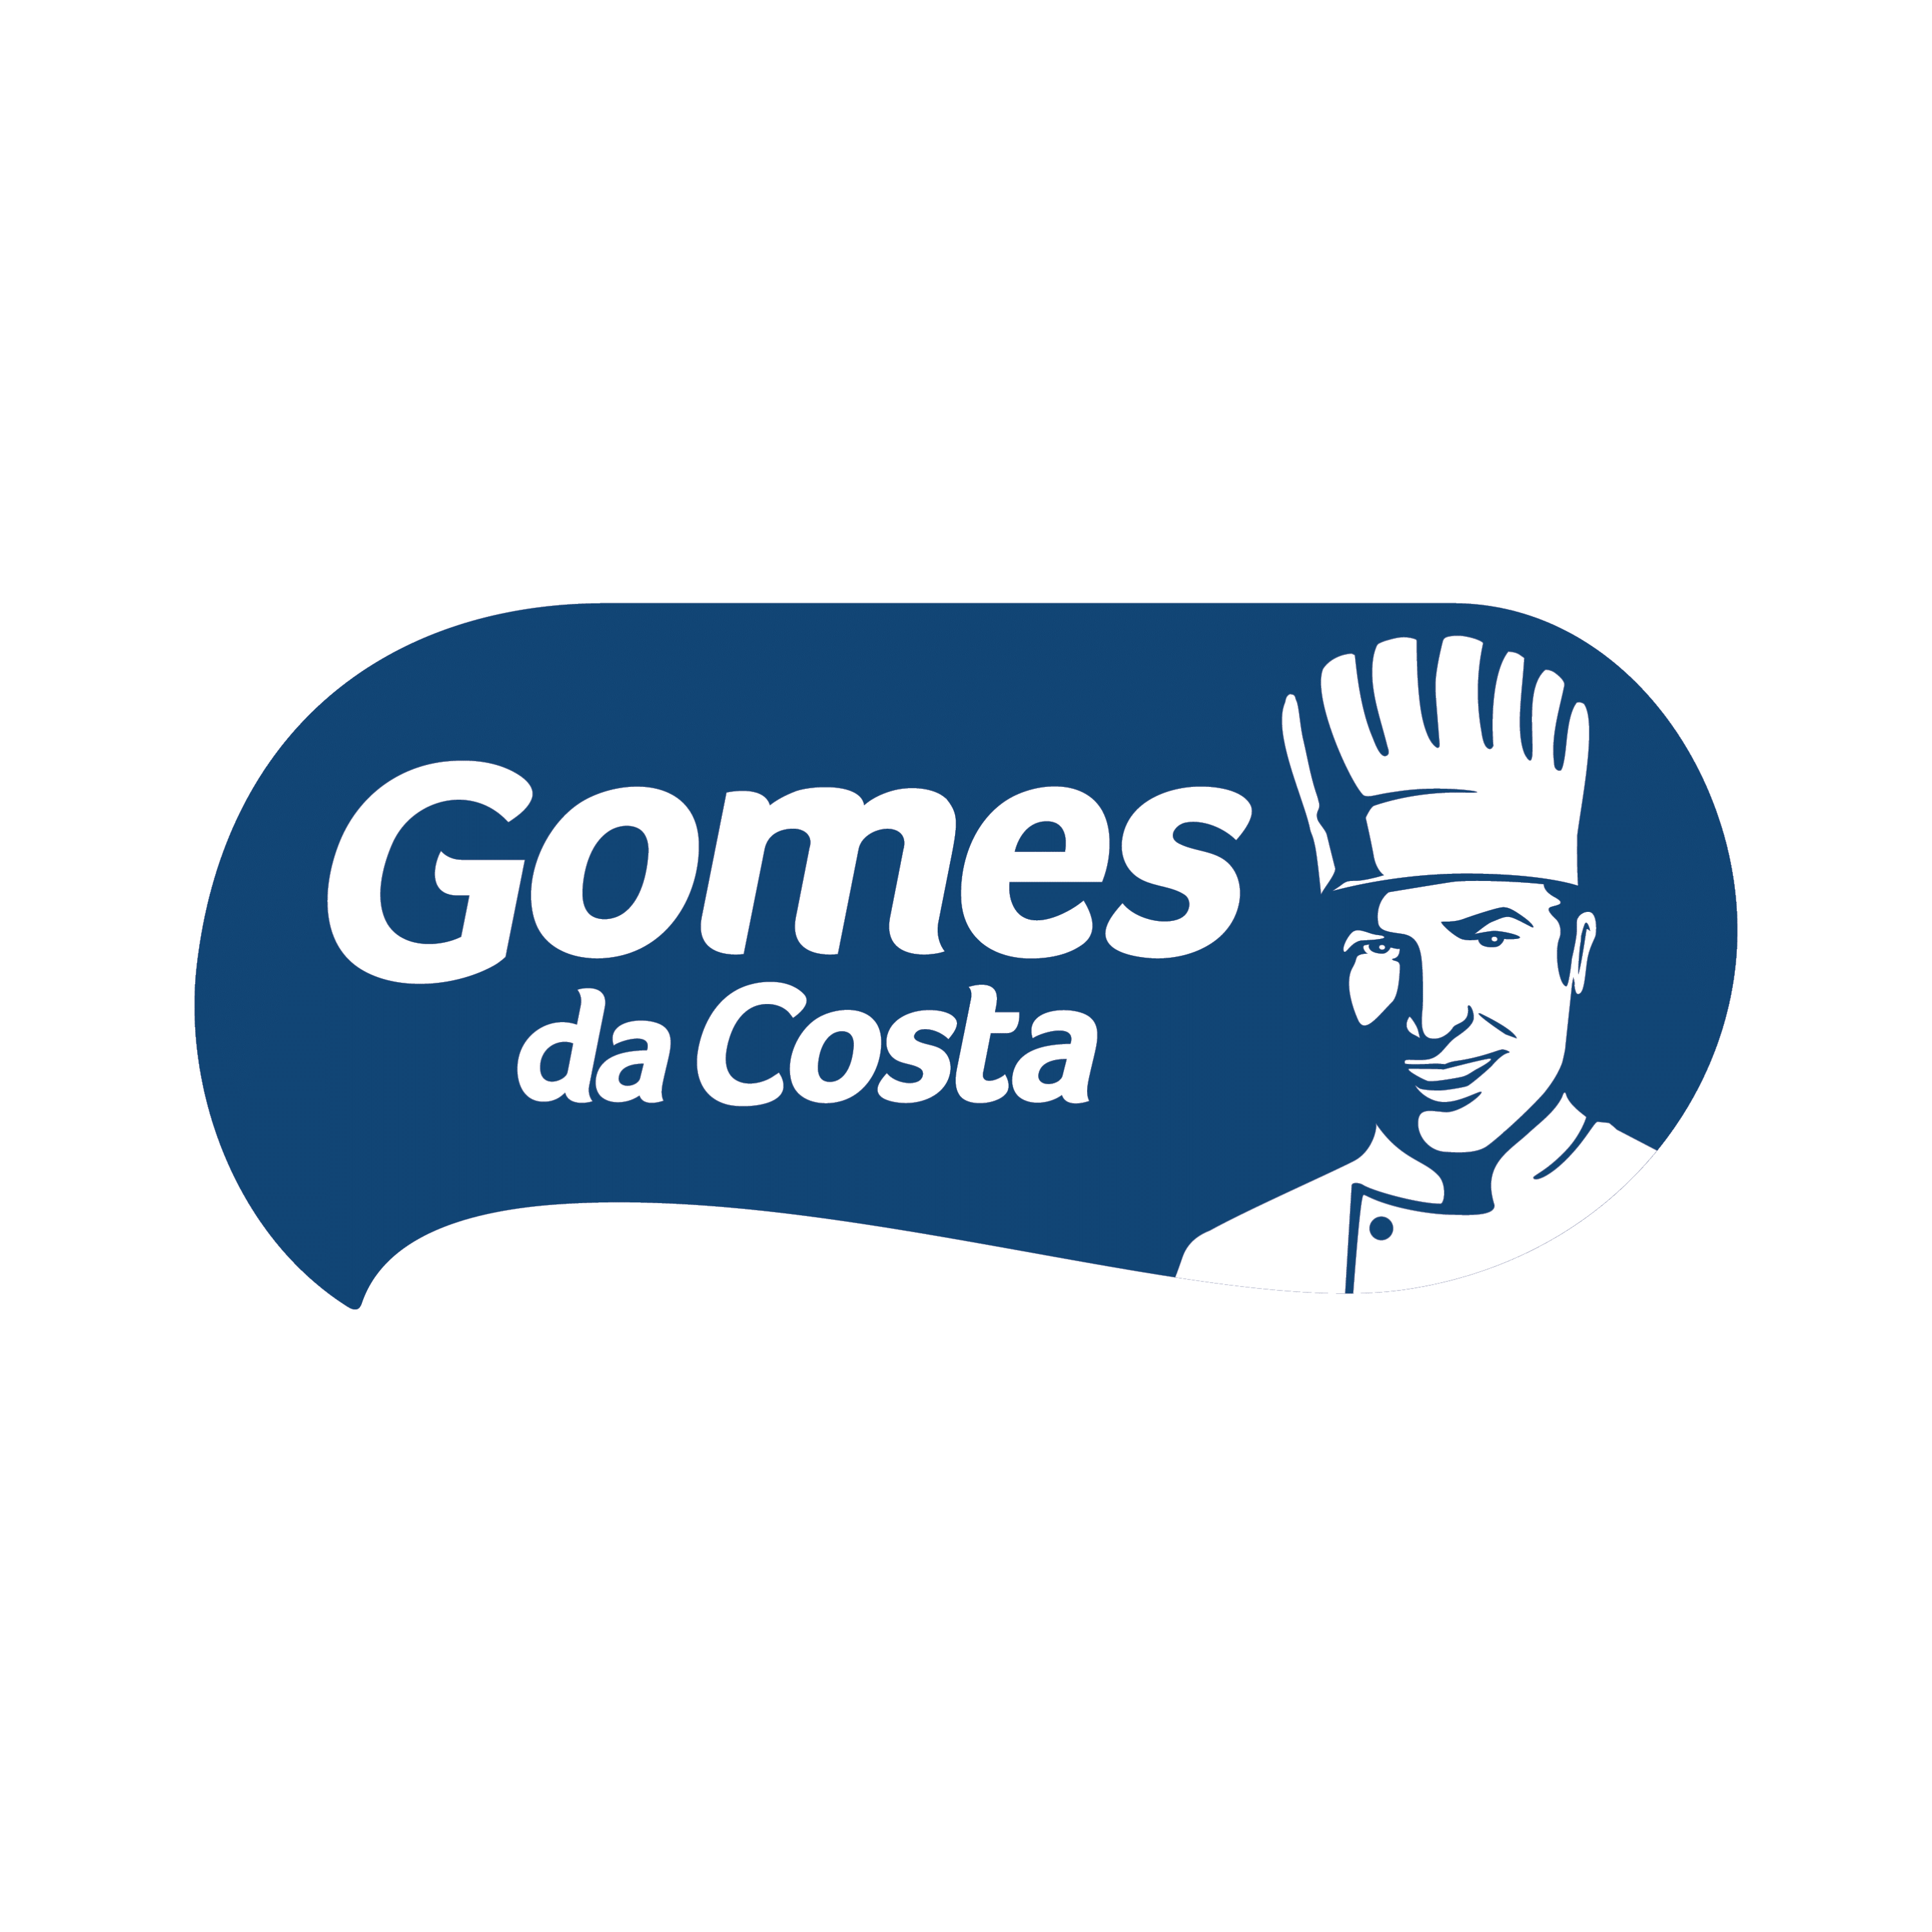 Gomes da Costa - LOGO-1